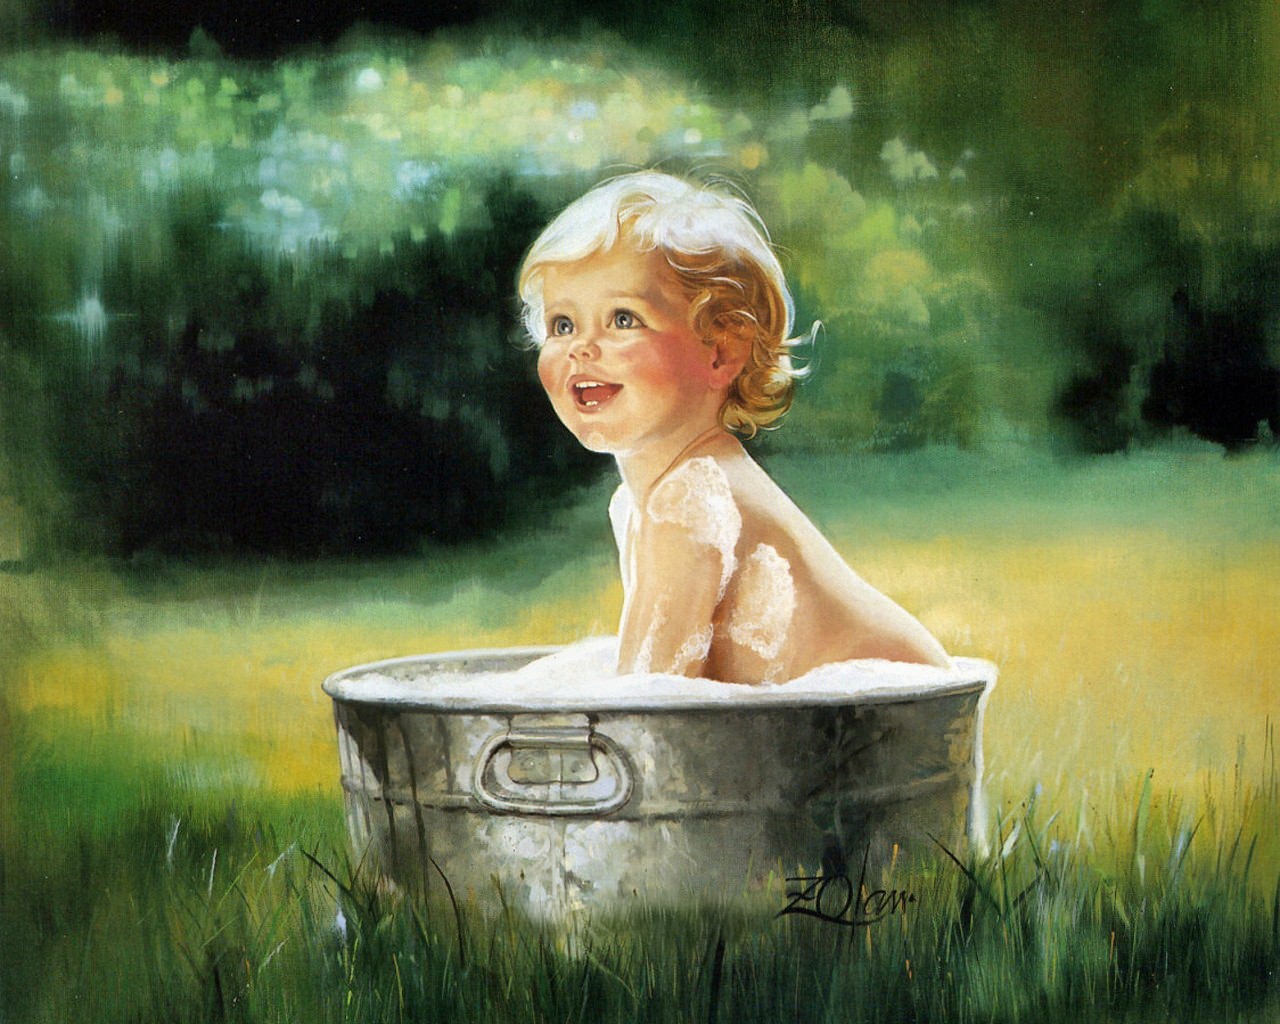 Обязательно в чистый четверг мыться. Картины Дональда Золана беззаботное детство. Картины Дональда Золана дети.